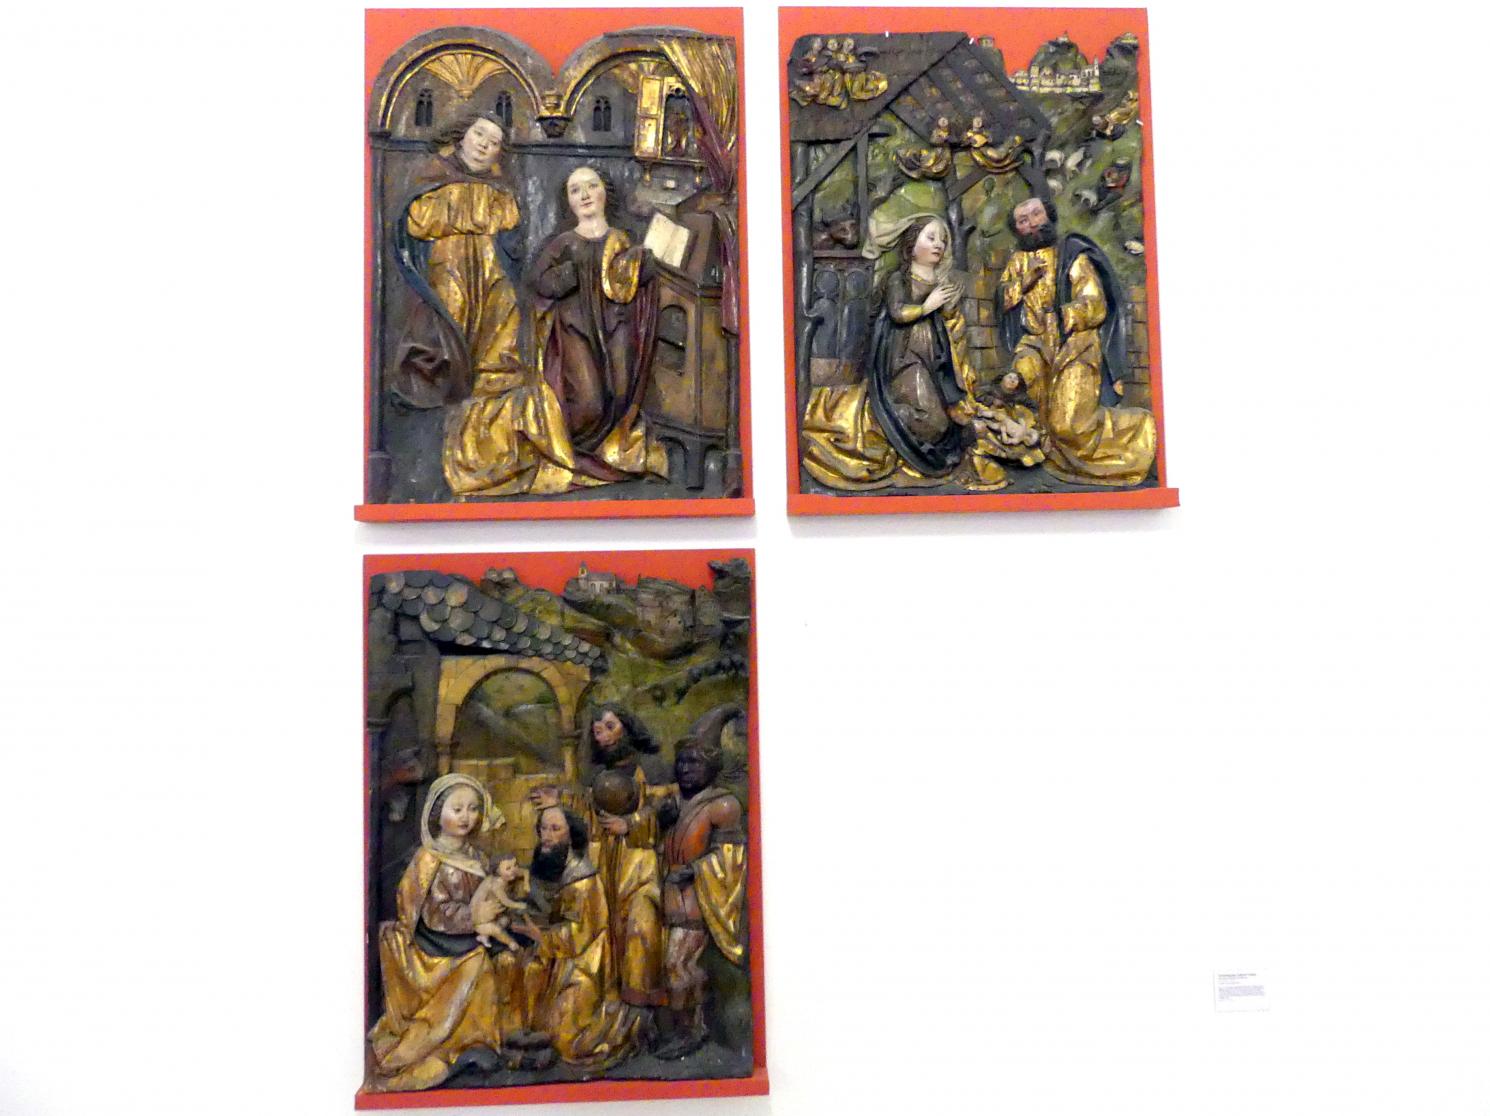 Verkündigung, Geburt Christi, Anbetung der Könige, Tod Mariens, Linz, Oberösterreichisches Landesmuseum, Die Zeit der Schnitzaltäre, um 1500